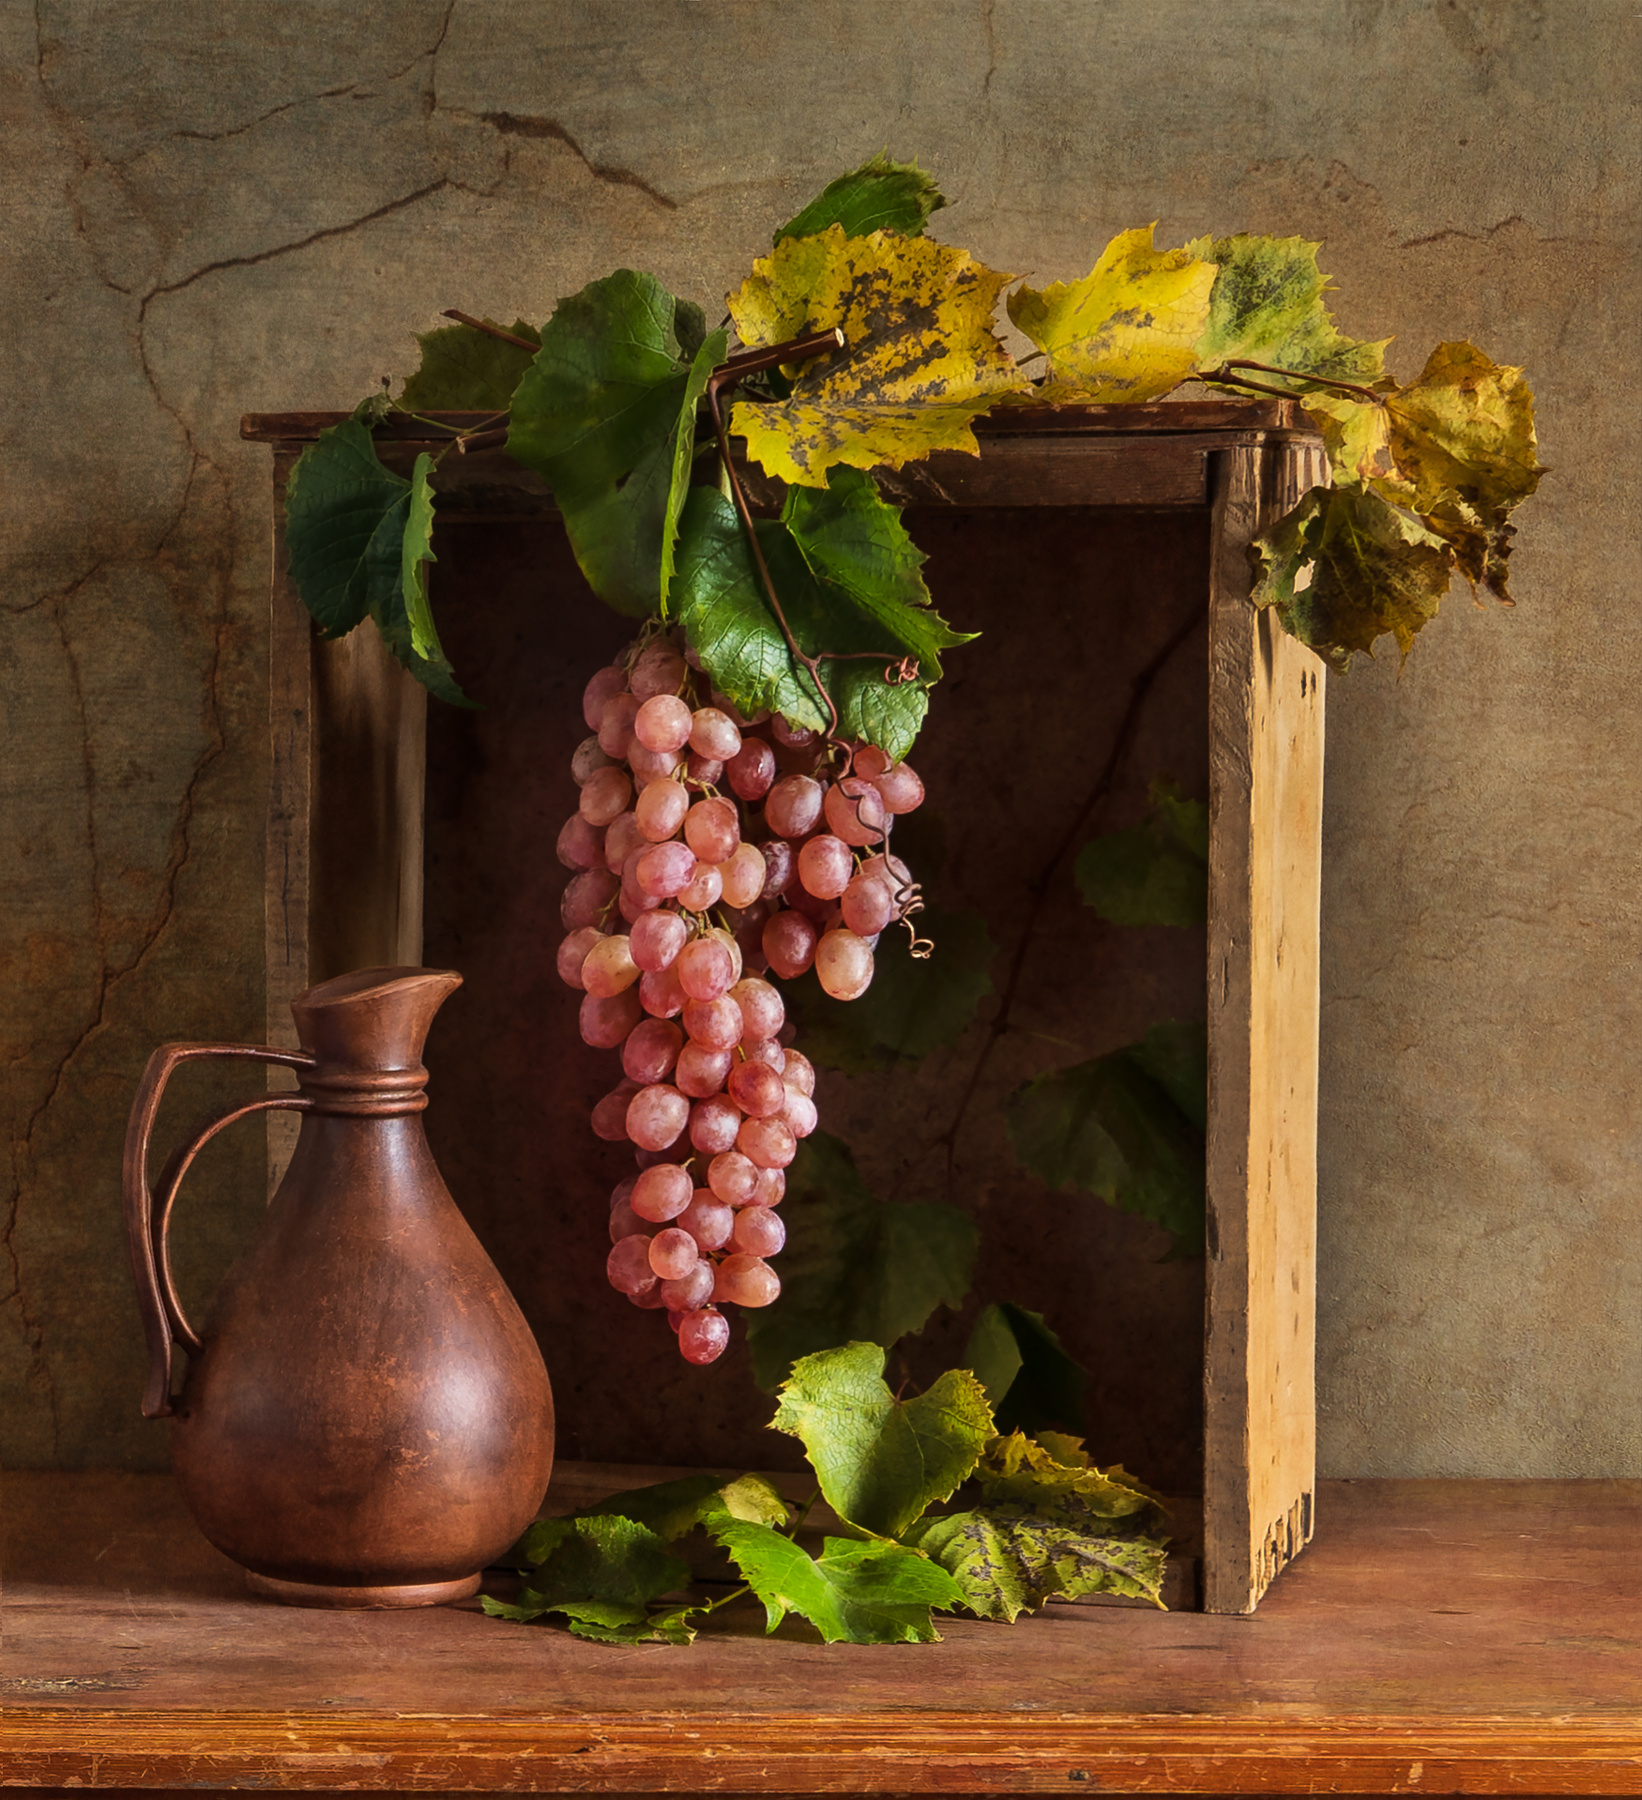 Гроздь винограда в нише. виноград ниша выдвижной ящик лоза кувшин осень классический натюрморт